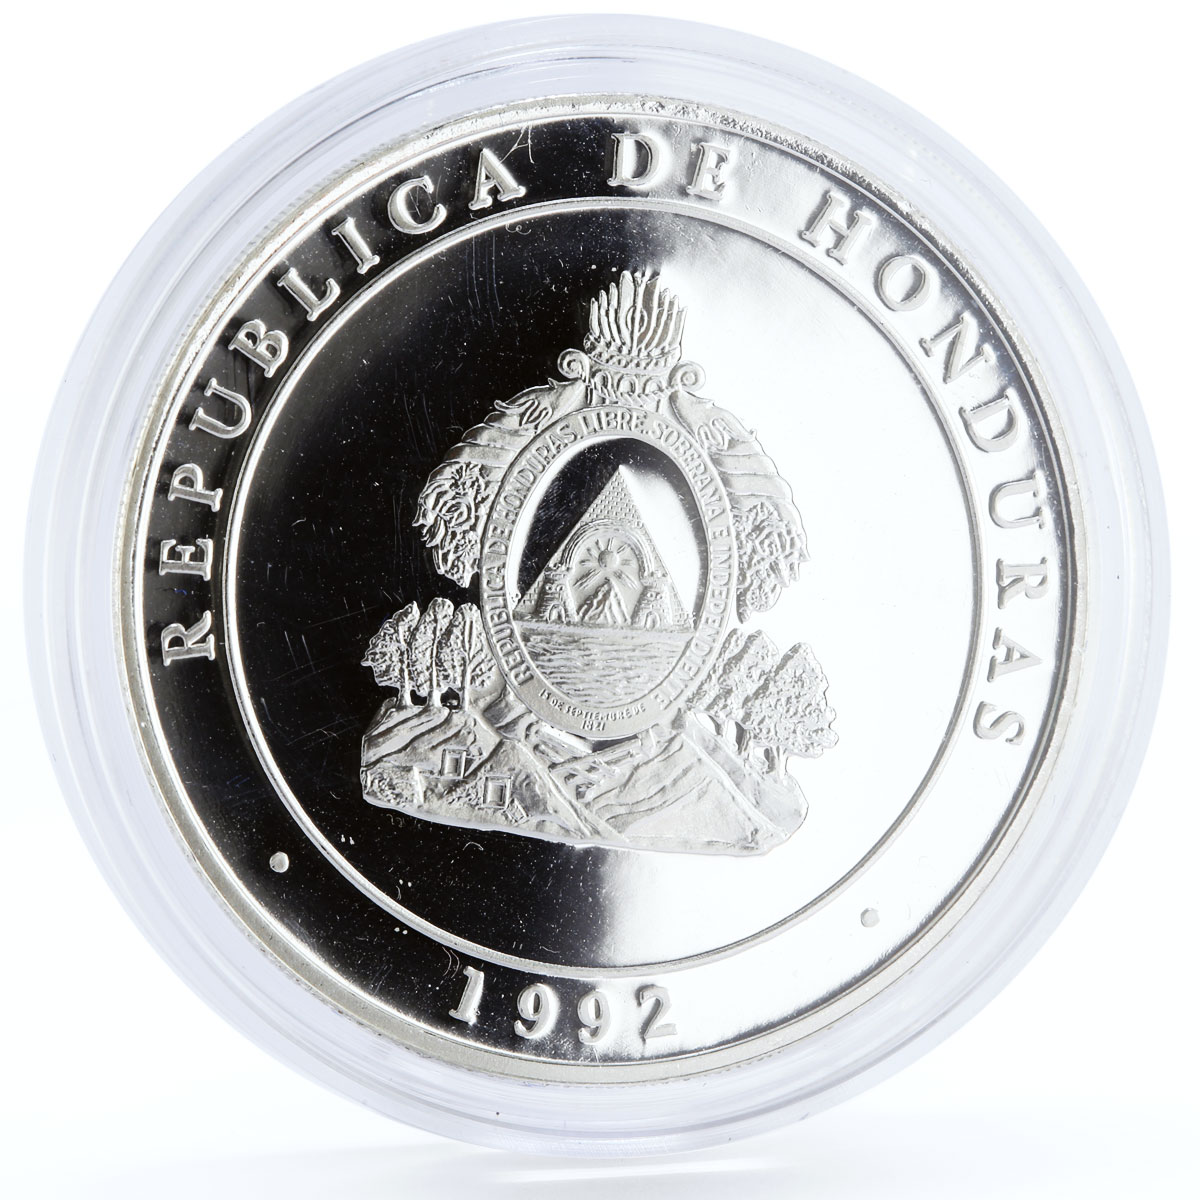 Honduras 100 lempiras Discovery of America Ship Stone Monument silver coin 1992